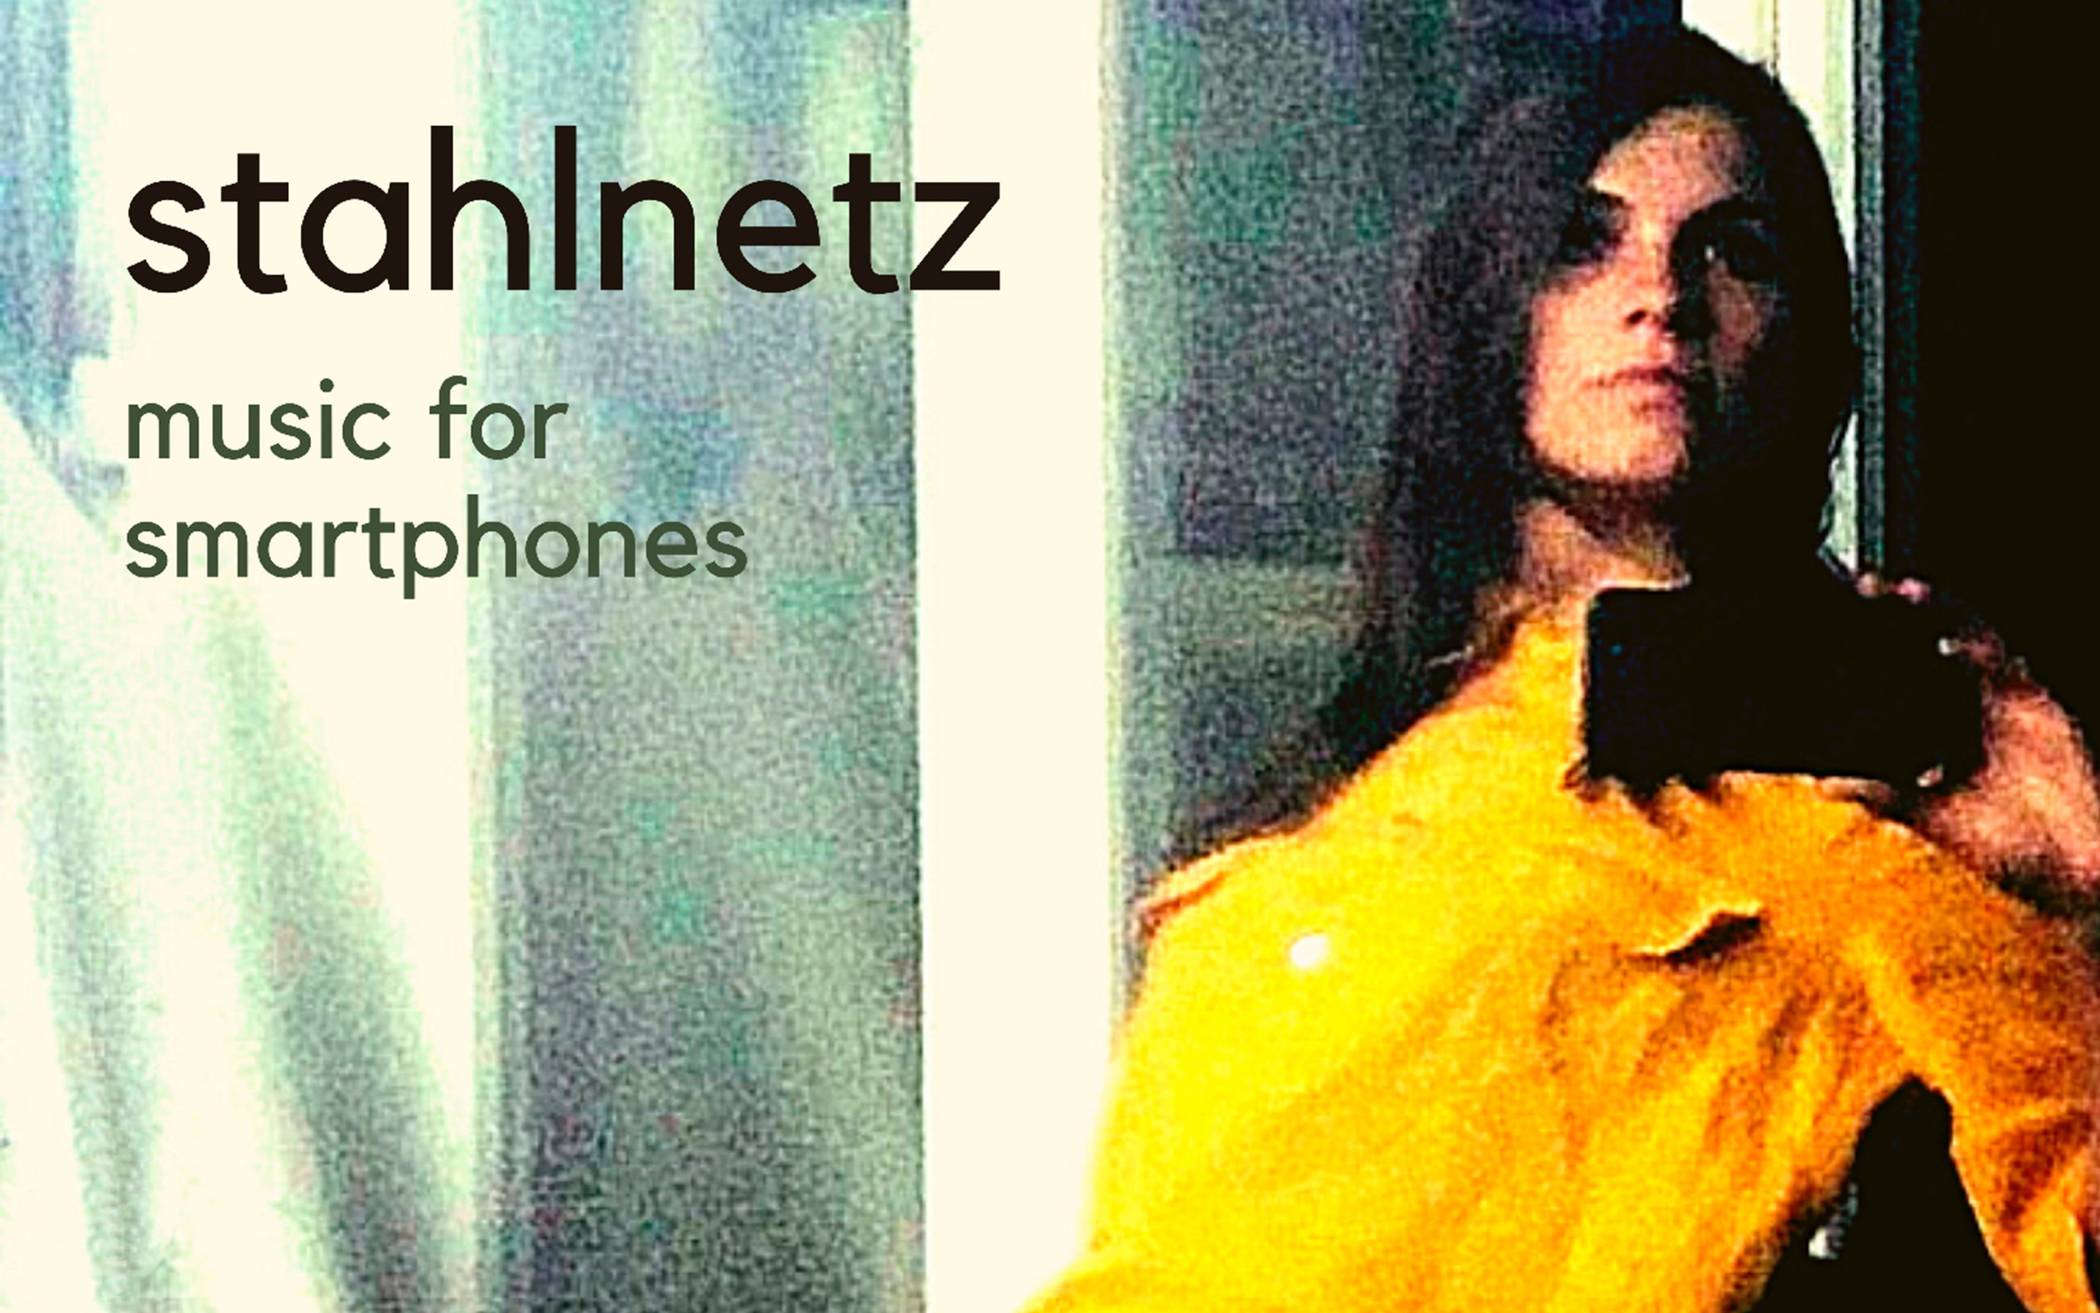  „Music for Smartphones“: So sieht es aus, das Cover des neuen (und seit 38 Jahren, als die Nr. 1 erschien, erst zweiten) „Stahlnetz“-Albums.    